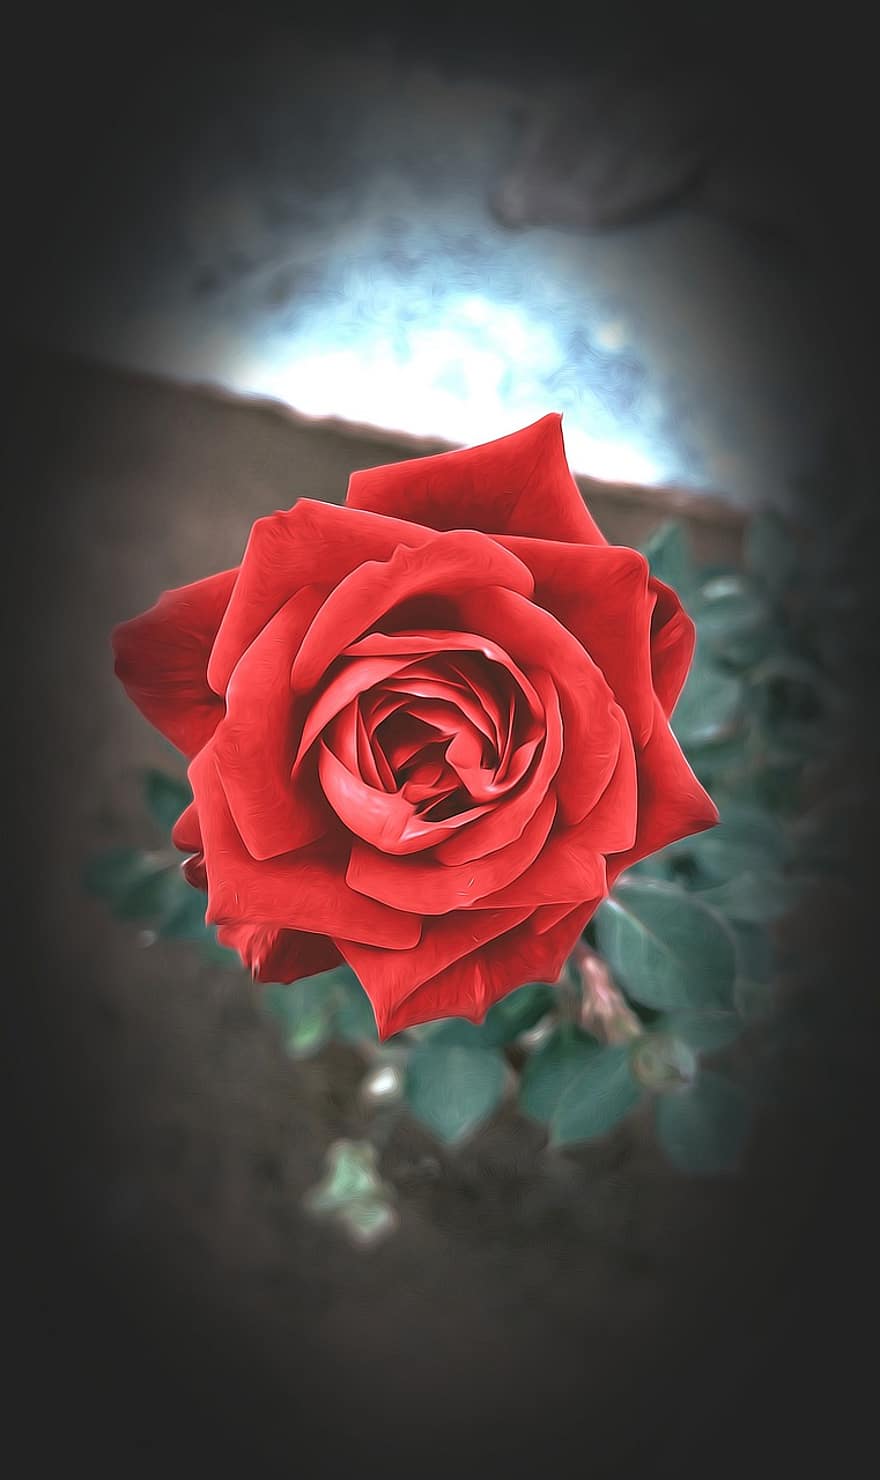 rose, blomst, anlegg, rød rose, rød blomst, petals, petal, nærbilde, romanse, blad, blomsterhodet